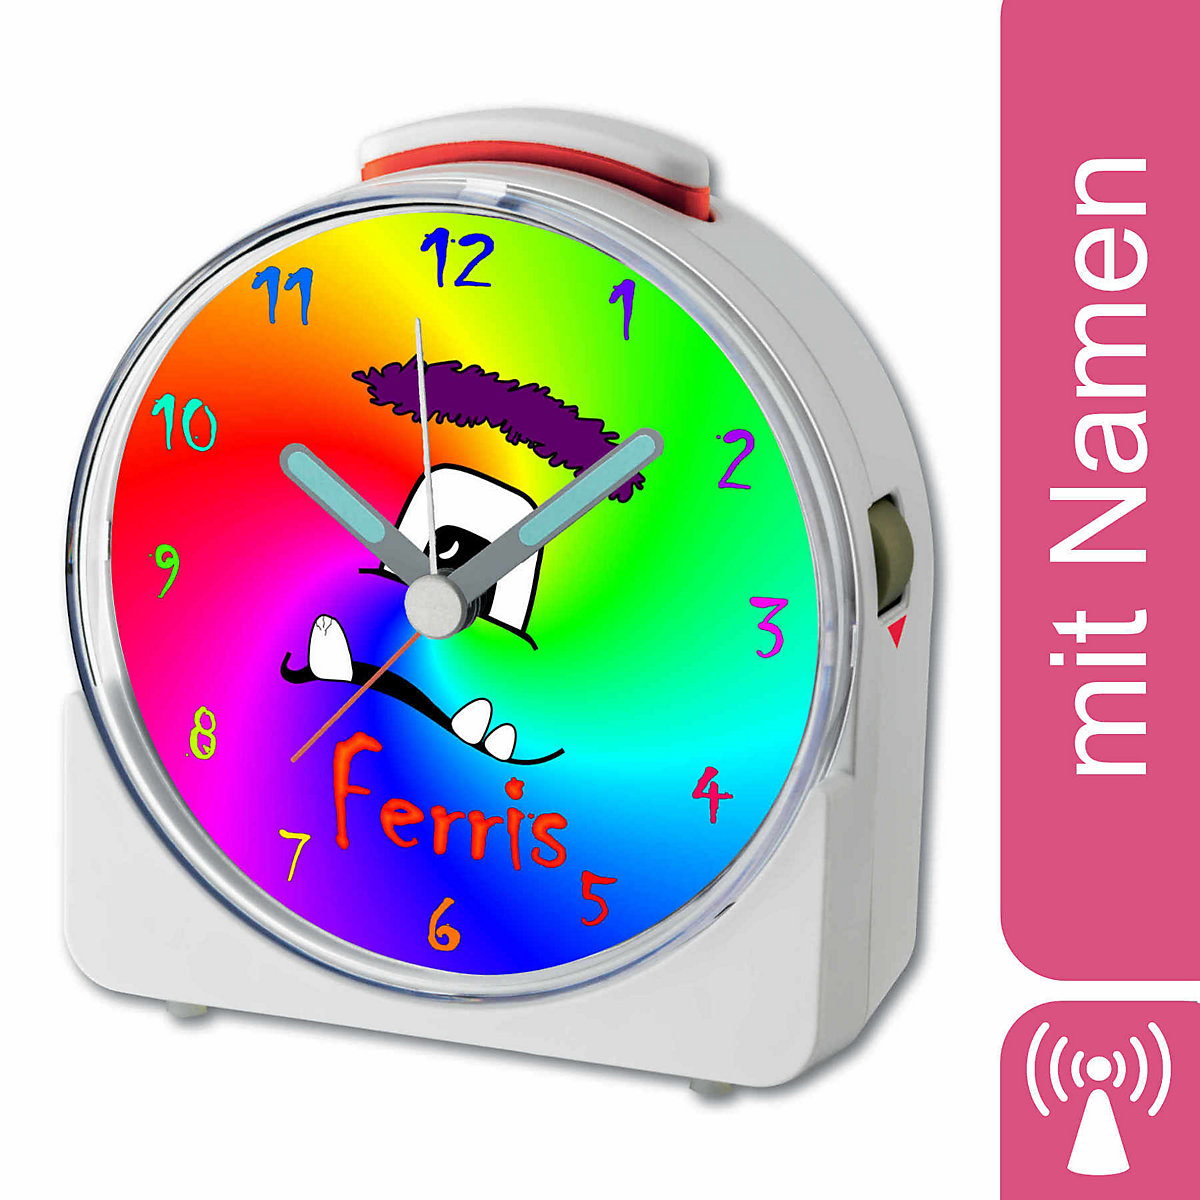 CreaDesign Kinder Funkwecker weiß personalisiert mit Namen Monster Regenbogen 12-Stunden-Anzeigeformat Geräuschlos/Ohne Ticken Nachtlicht